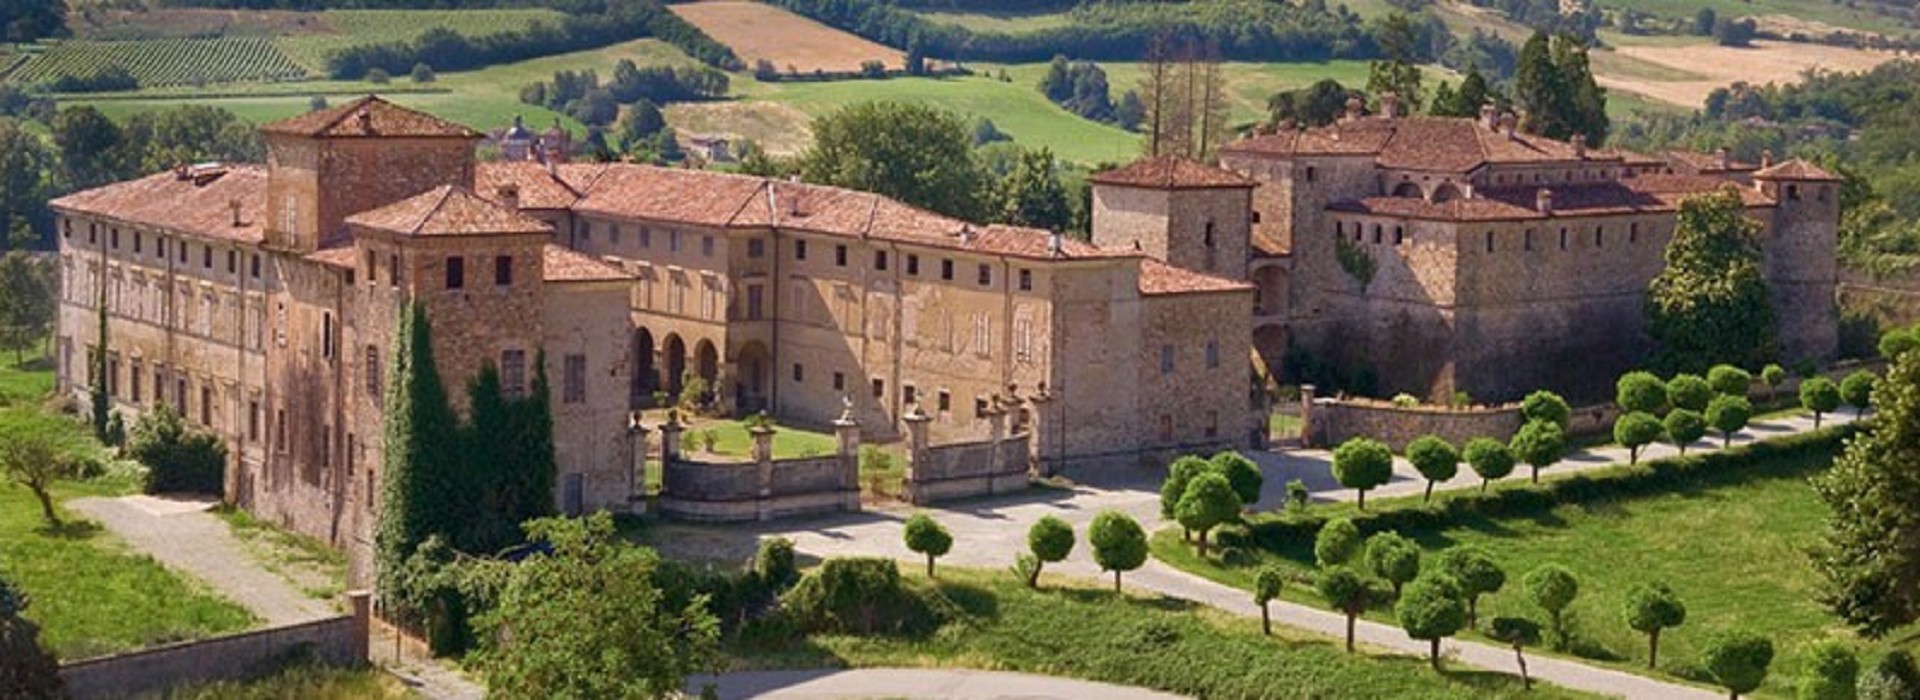 Agazzano Fortress